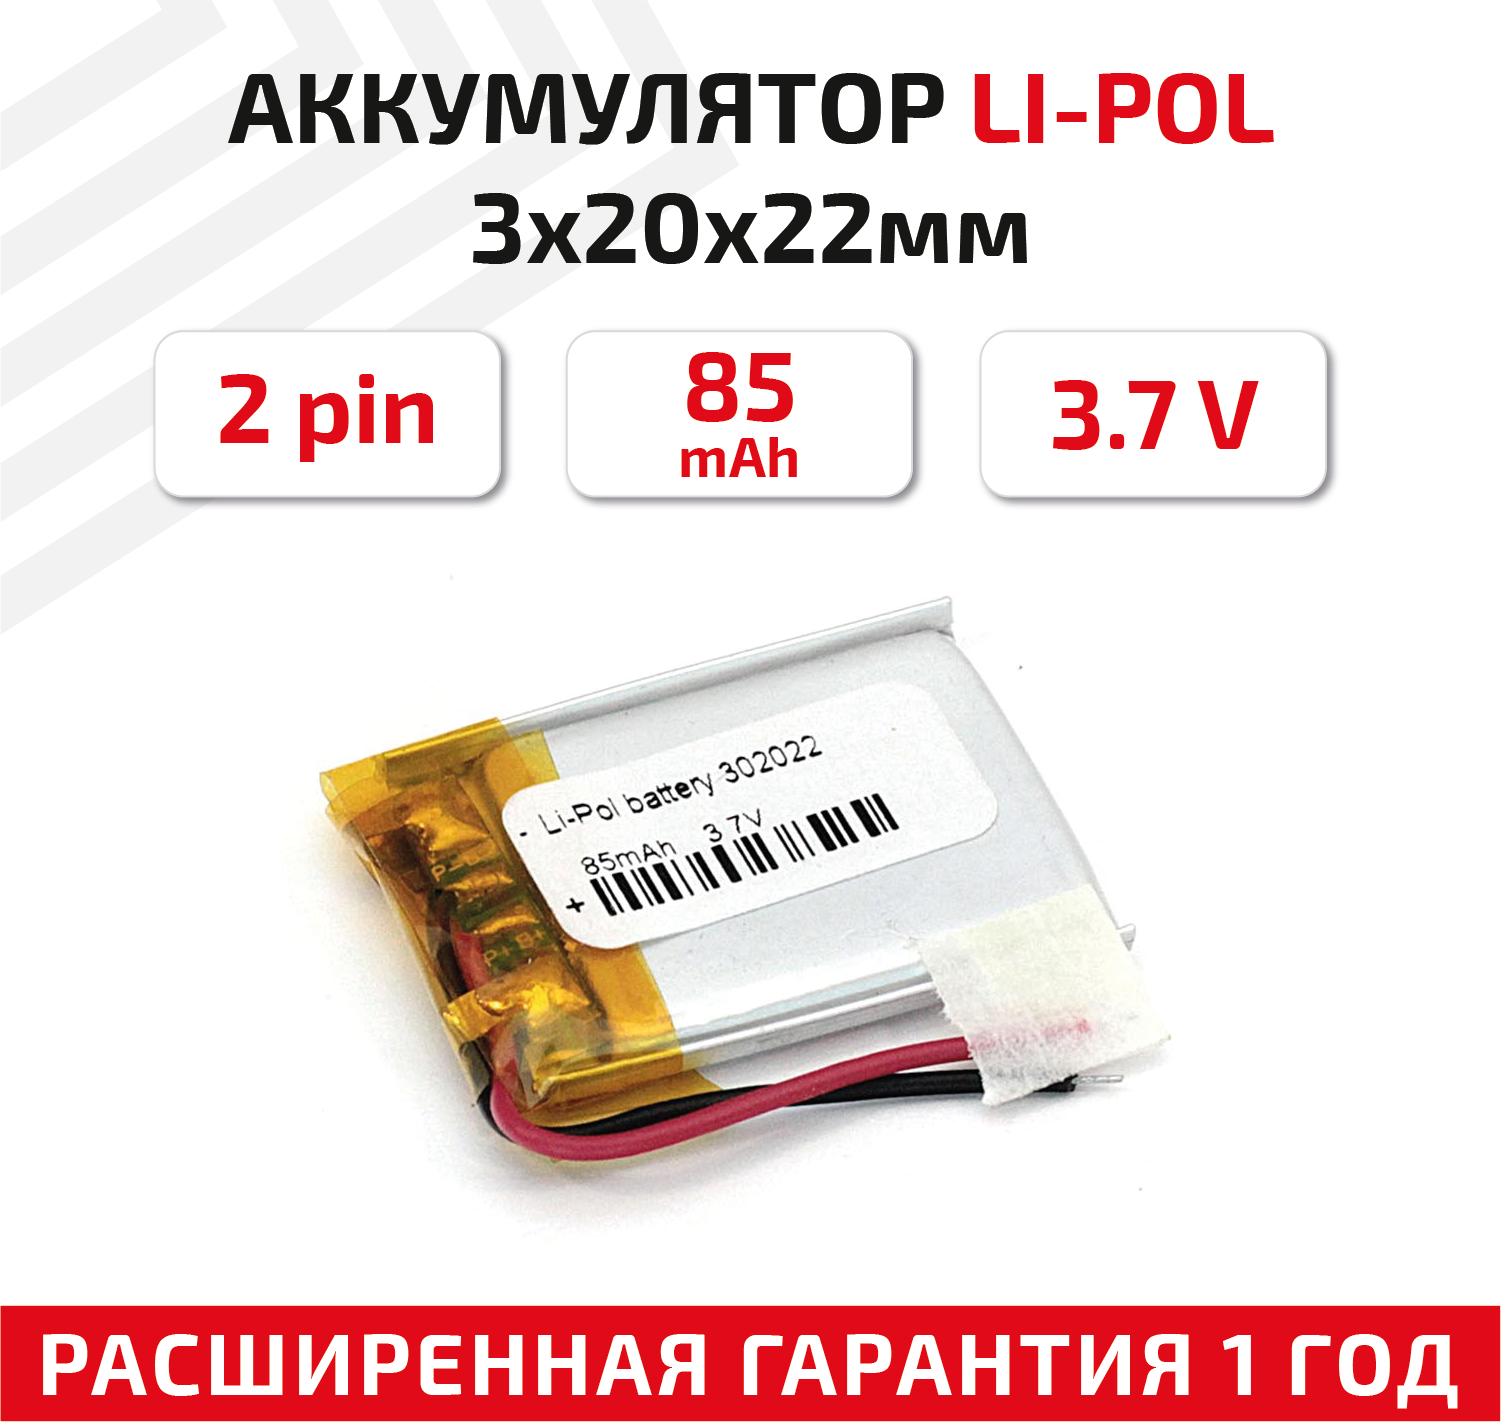 Универсальный аккумулятор (АКБ) для планшета, видеорегистратора и др, 3х20х22мм, 85мАч, 3.7В, Li-Pol, 2pin (на 2 провода)